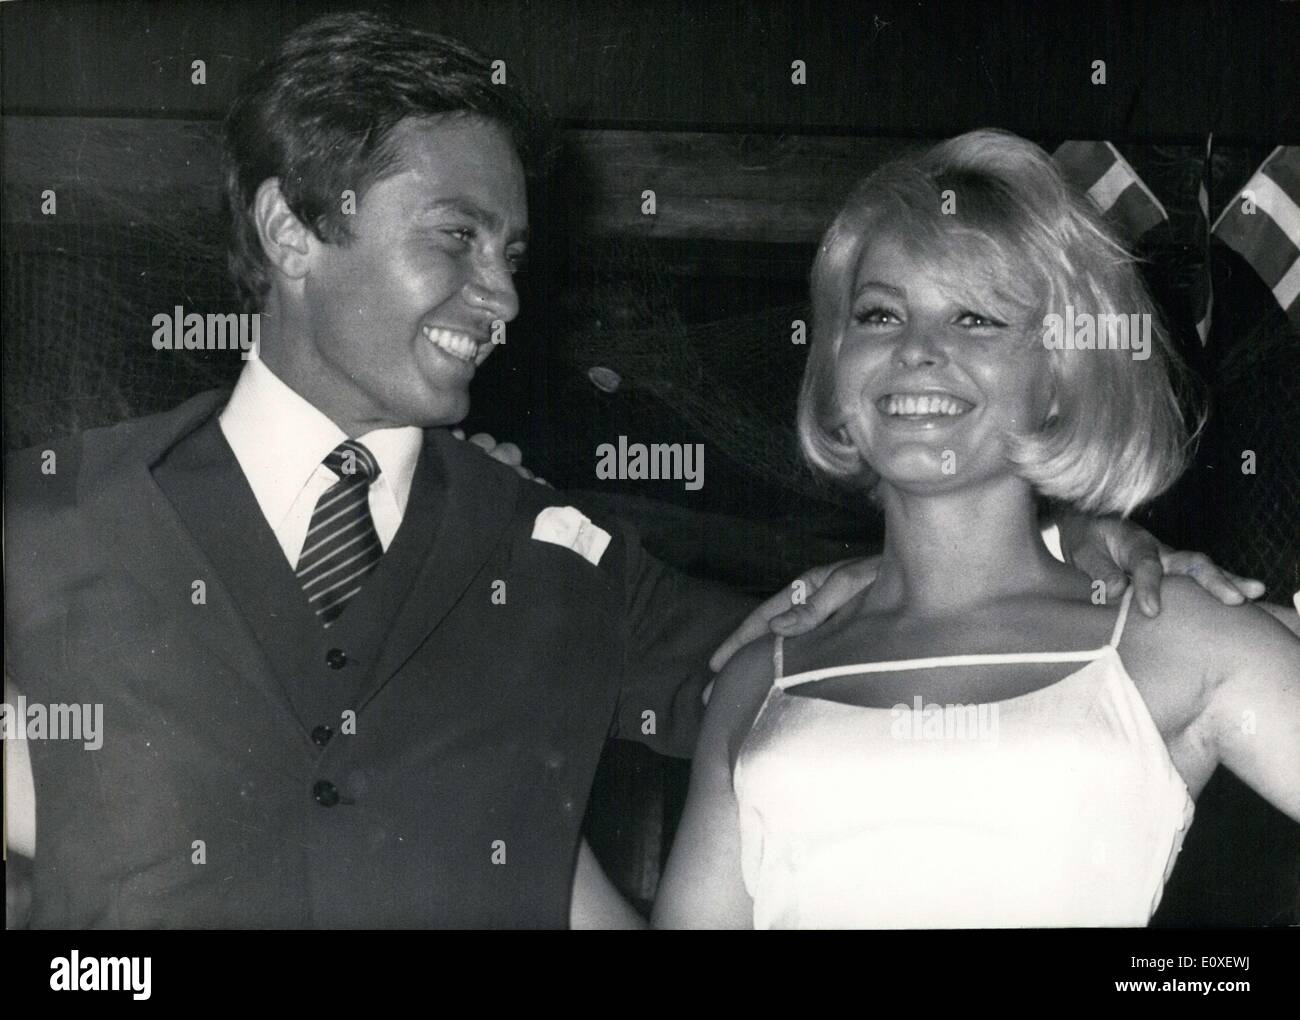 Juillet 18, 1966 - Le chanteur Rex Gildo et sa belle actrice partenaire Maria Brockerhoff dansé une vive Sirtaki sur la piste de danse dans un bar local au cours de la semaines promotionnelles grec(18 Juillet au 15 août) à Munich. Banque D'Images